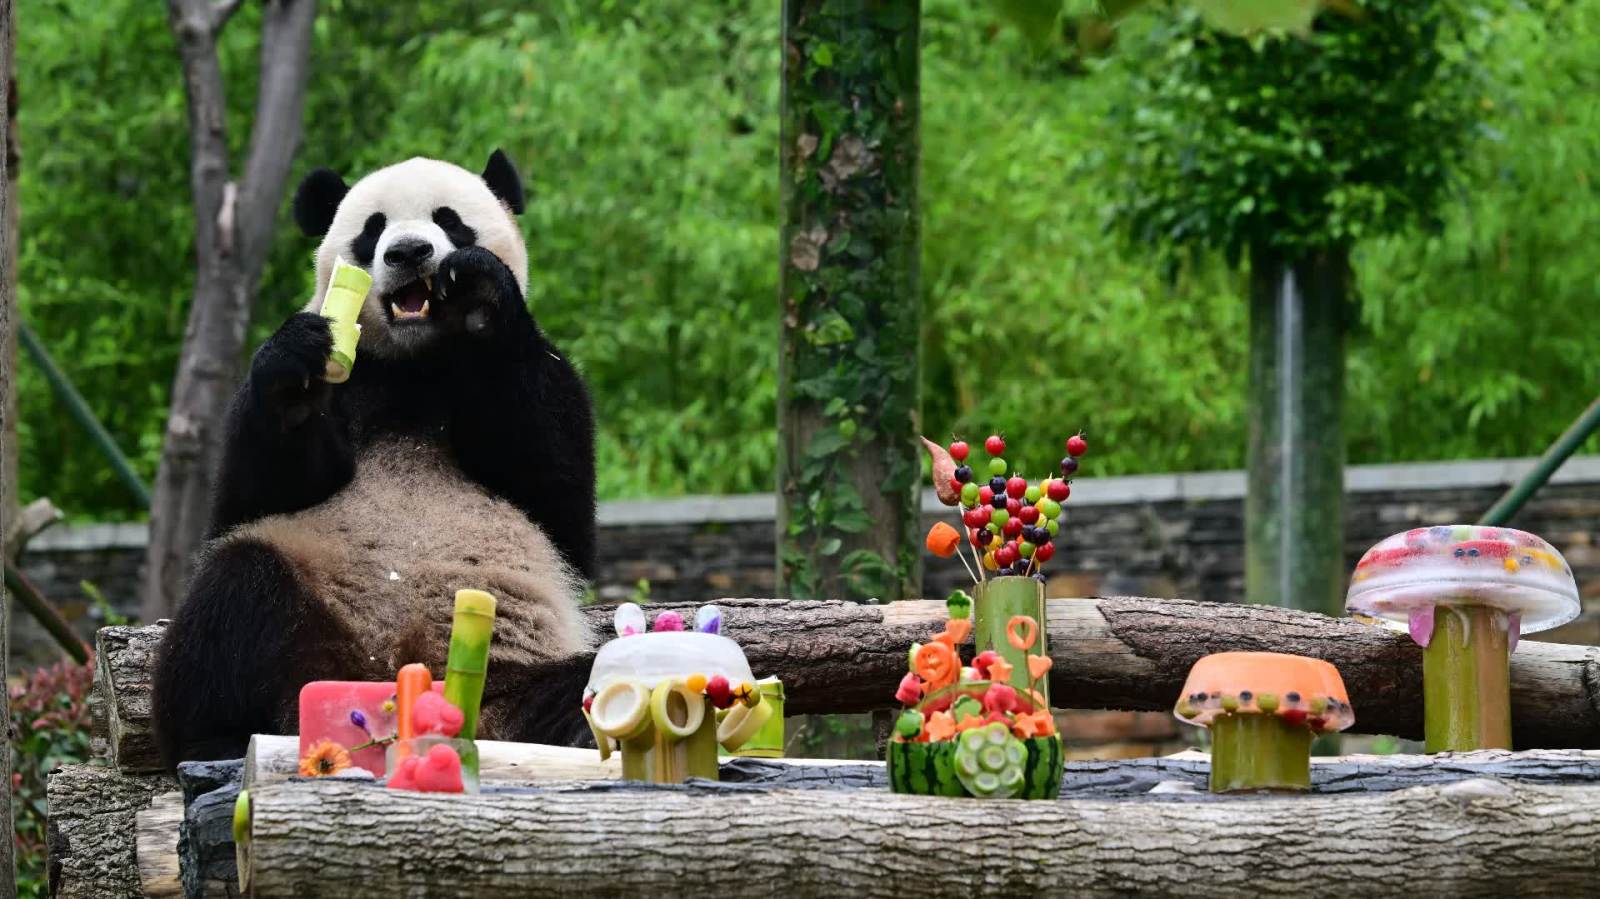 滿屏大熊貓！多圖圍觀熊貓中心大熊貓過生日